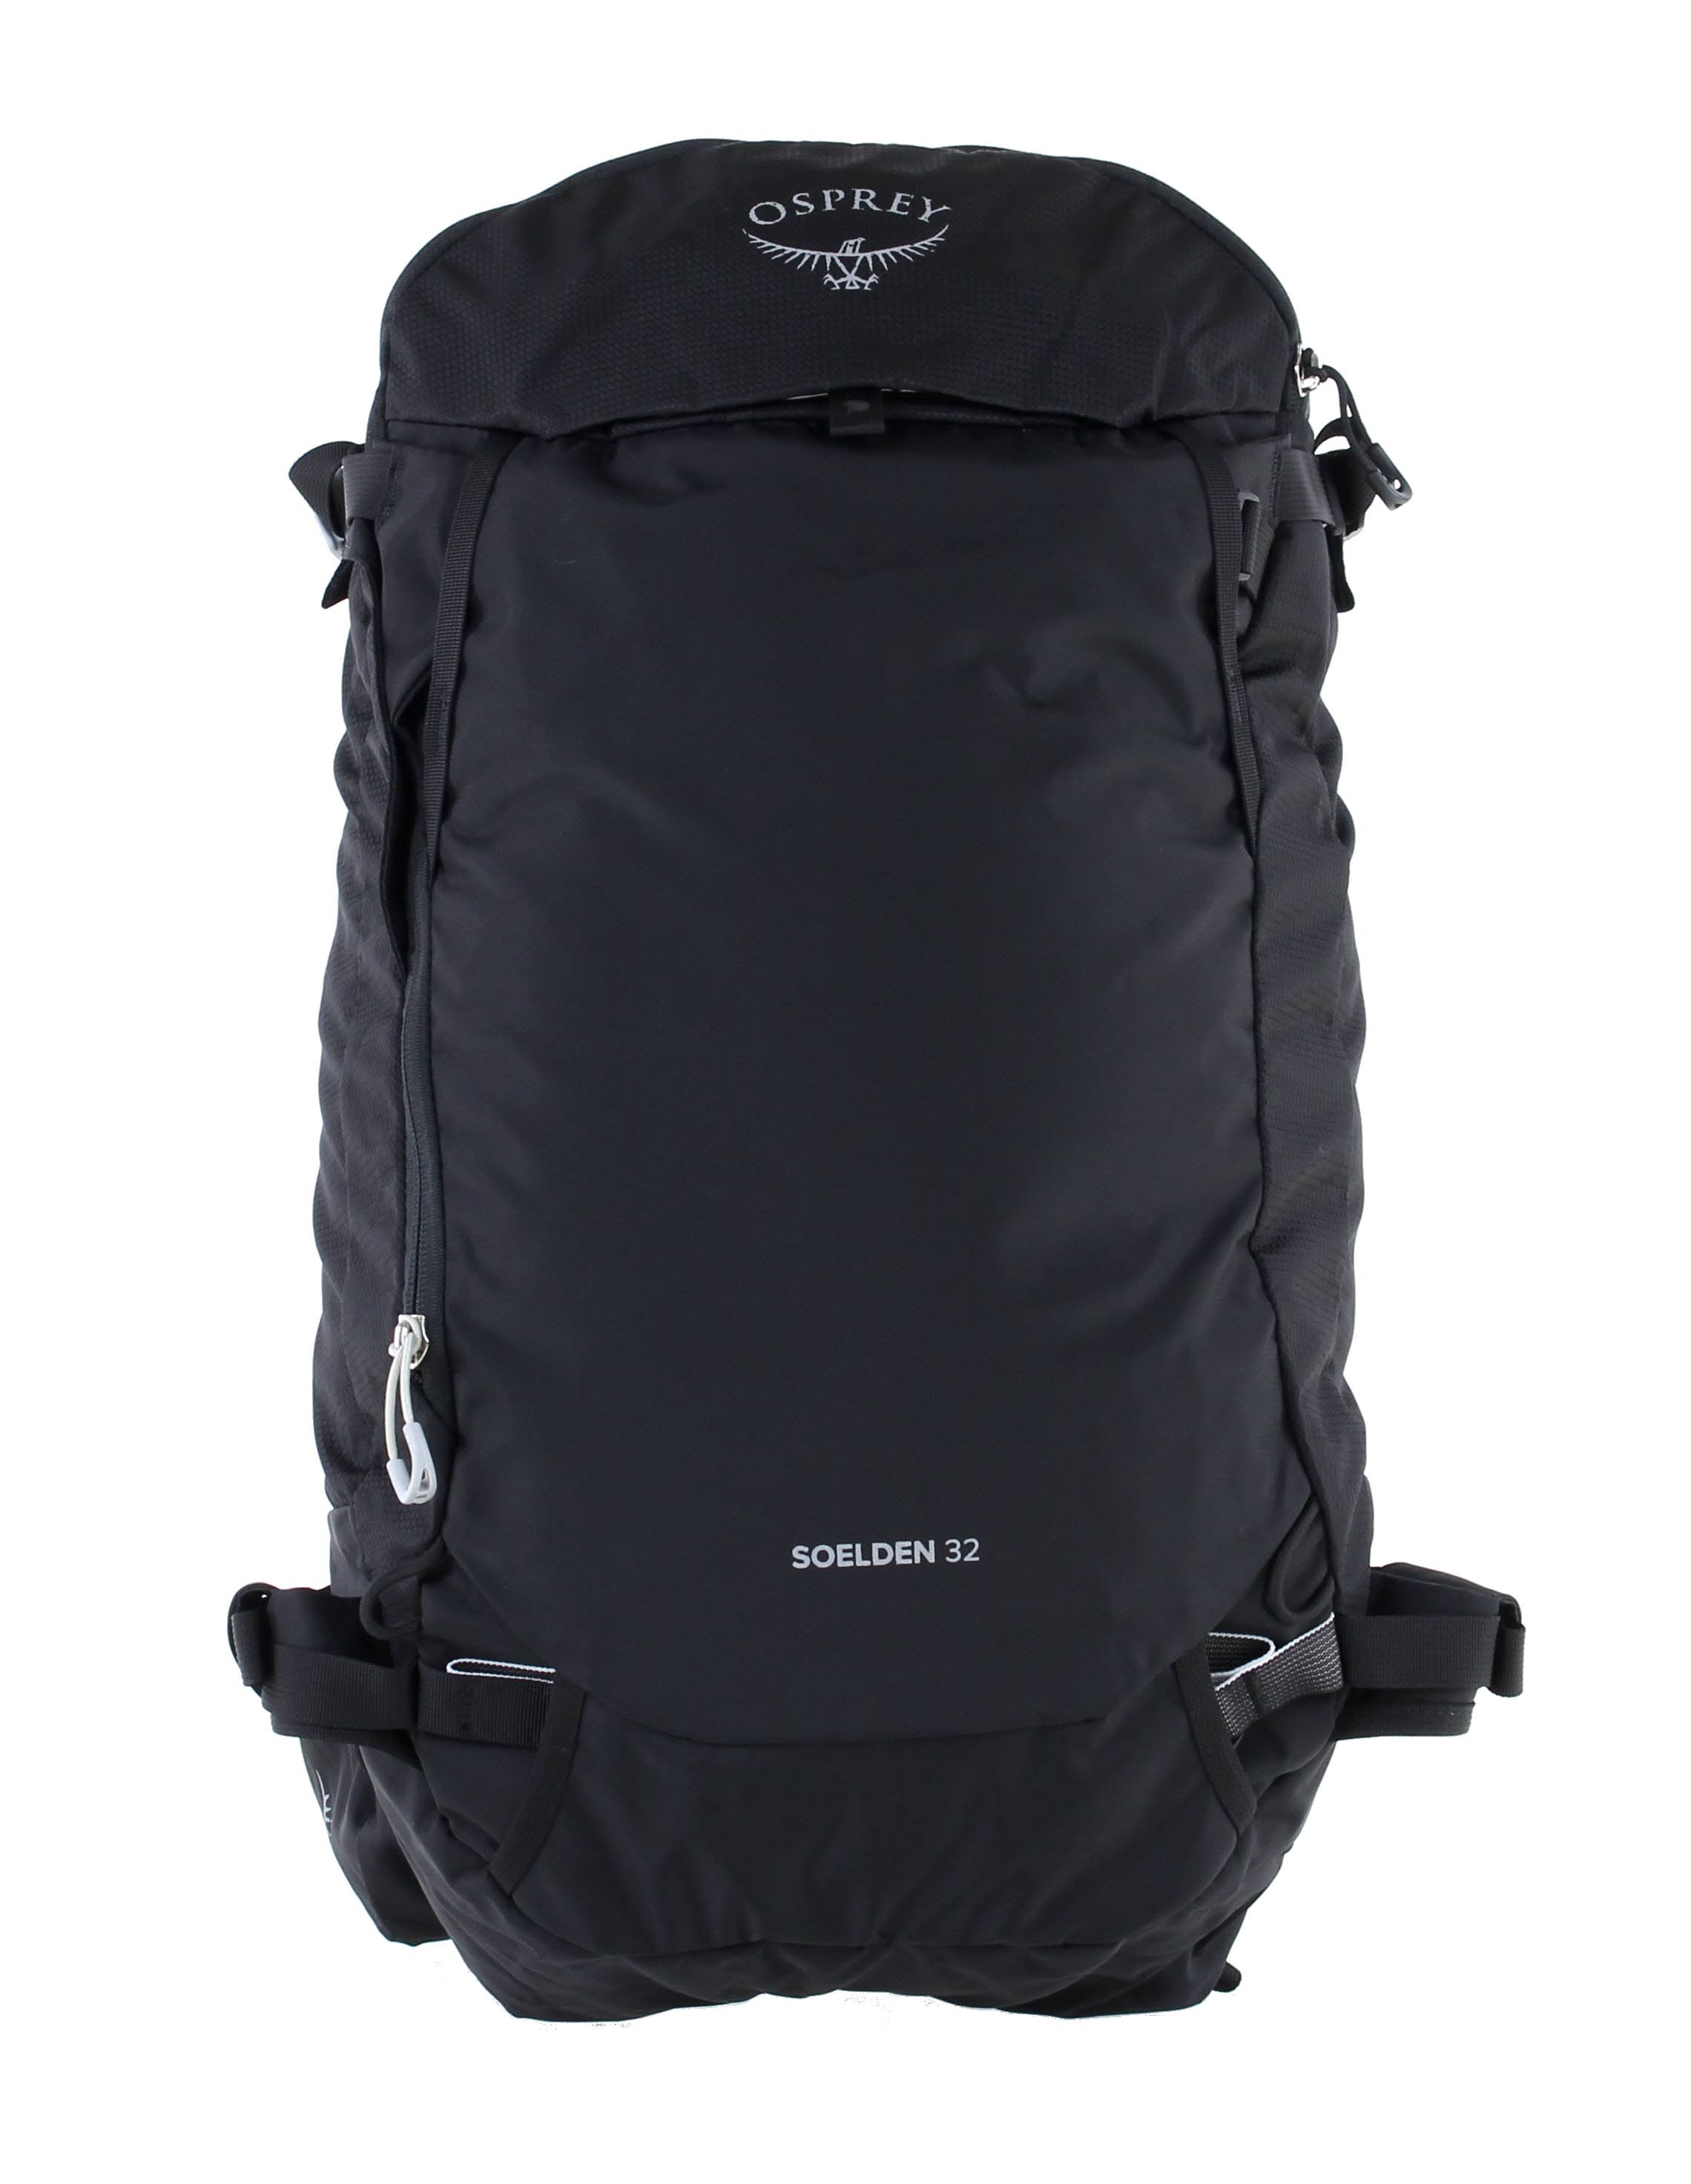 Osprey Soelden 32L Backpack Black